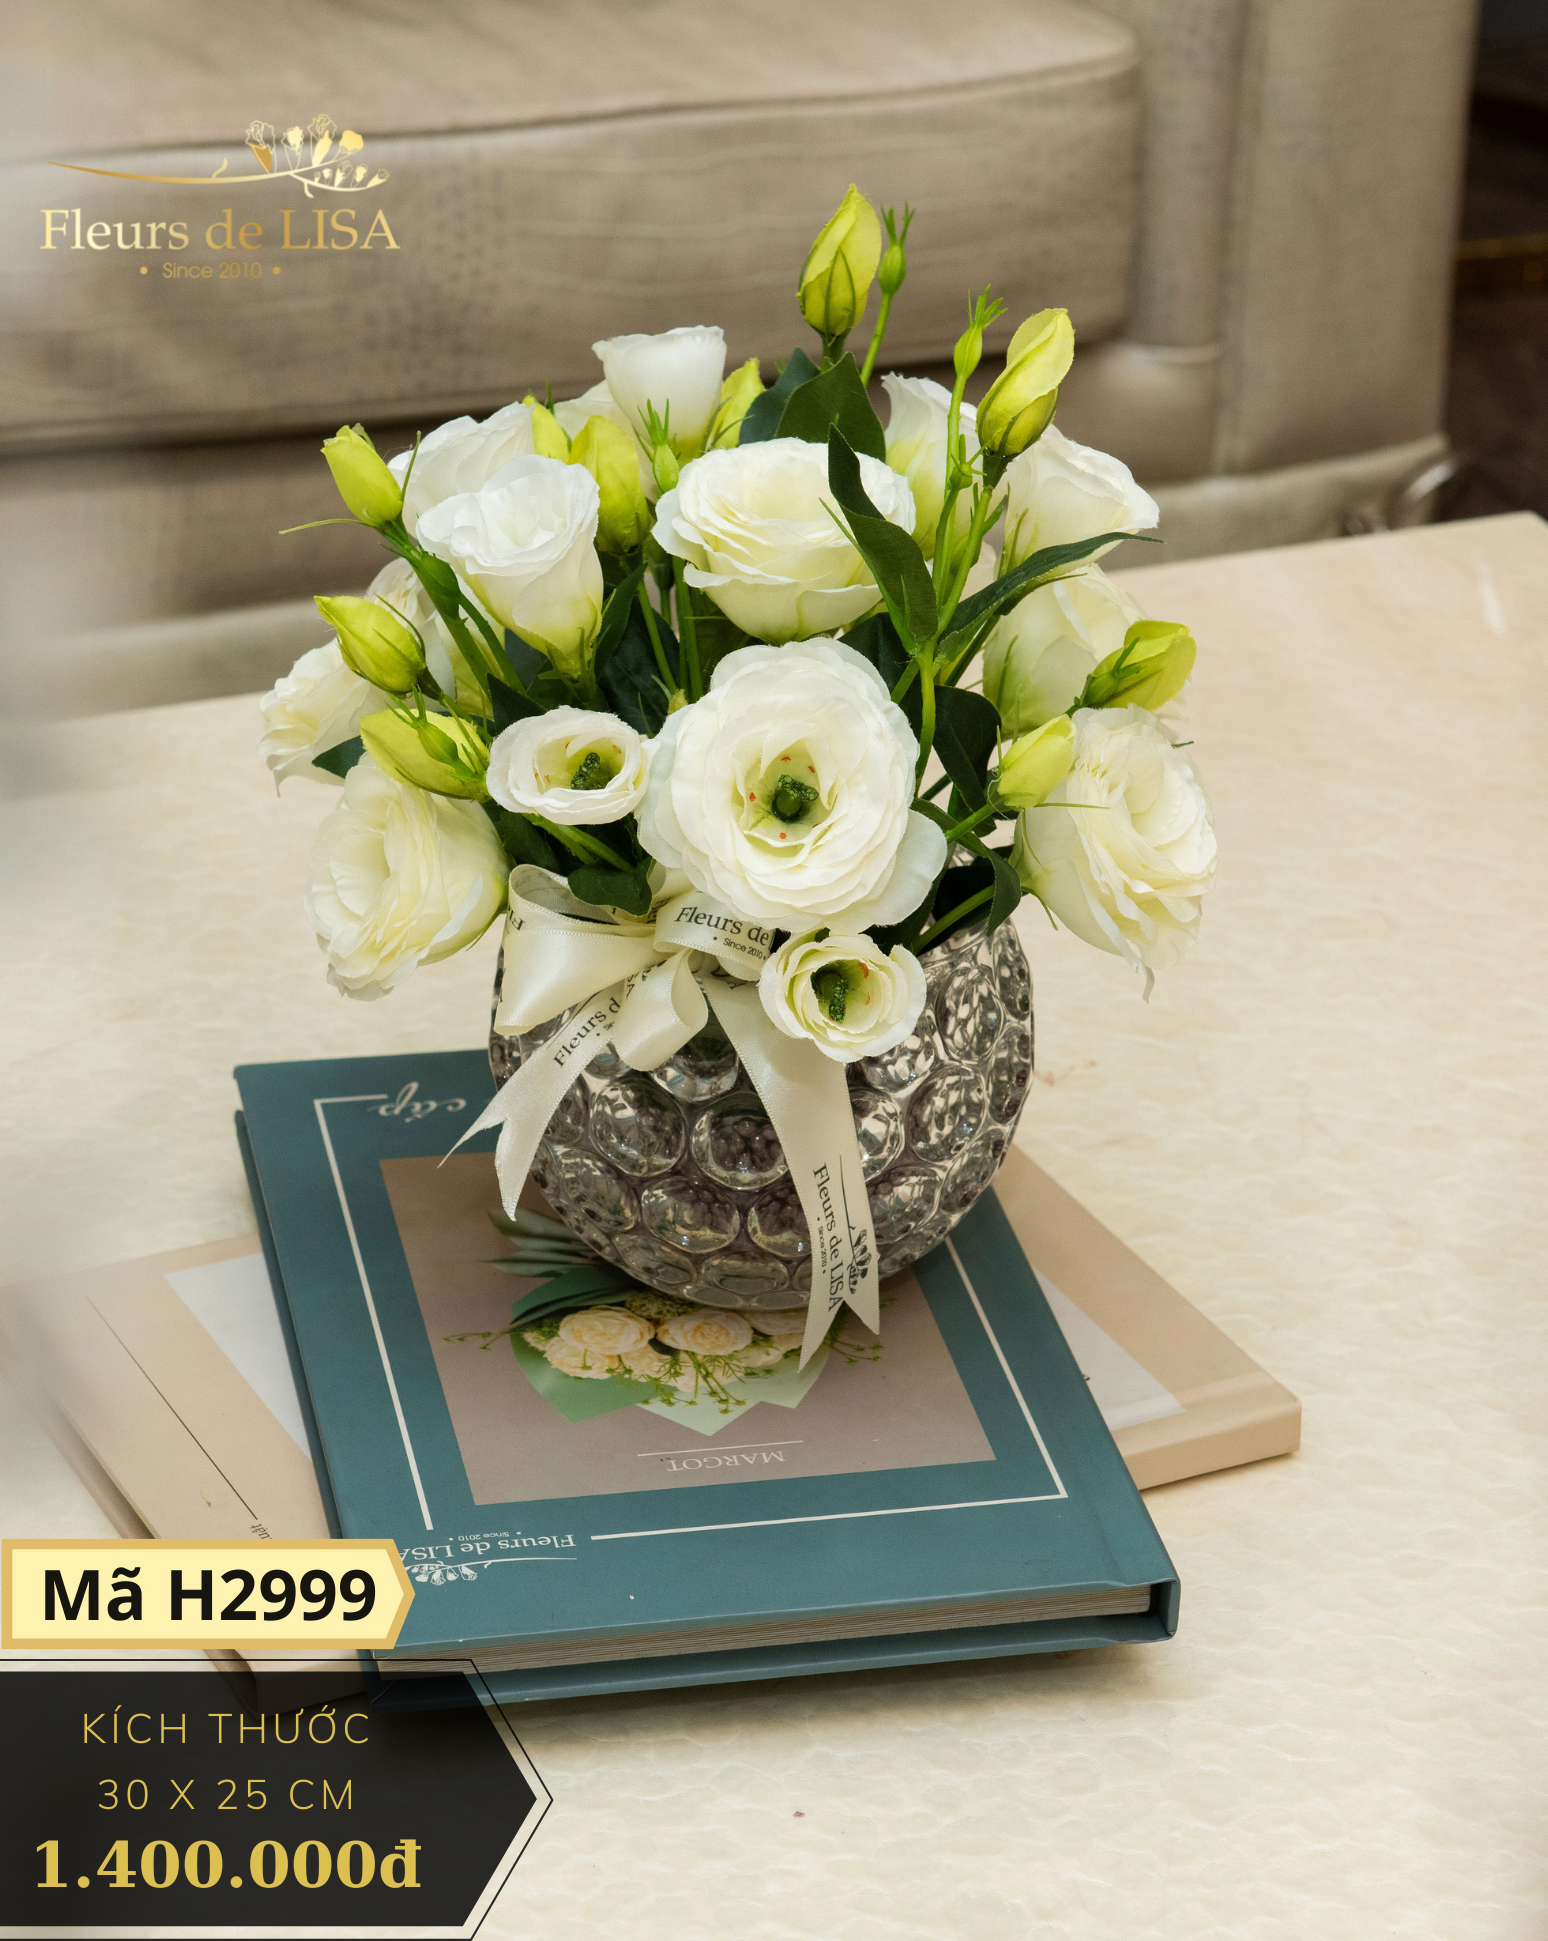 Beudy - Bình hoa cát tường để bàn – Fleurs de LISA - Hoa lụa phong ...